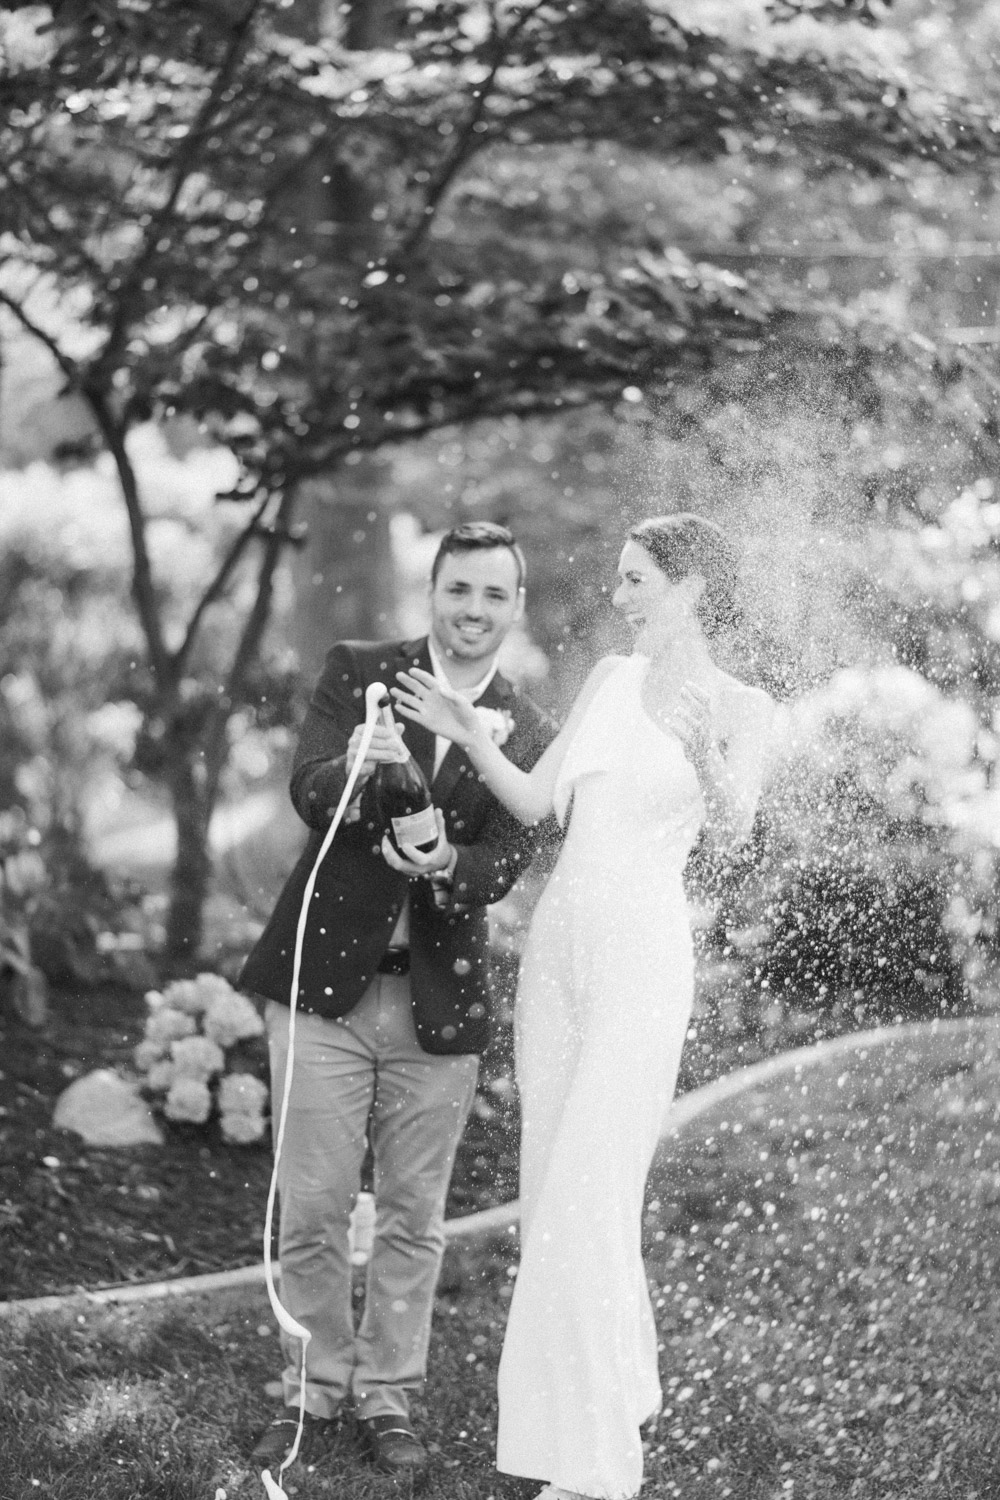 chicago backyard wedding photographer